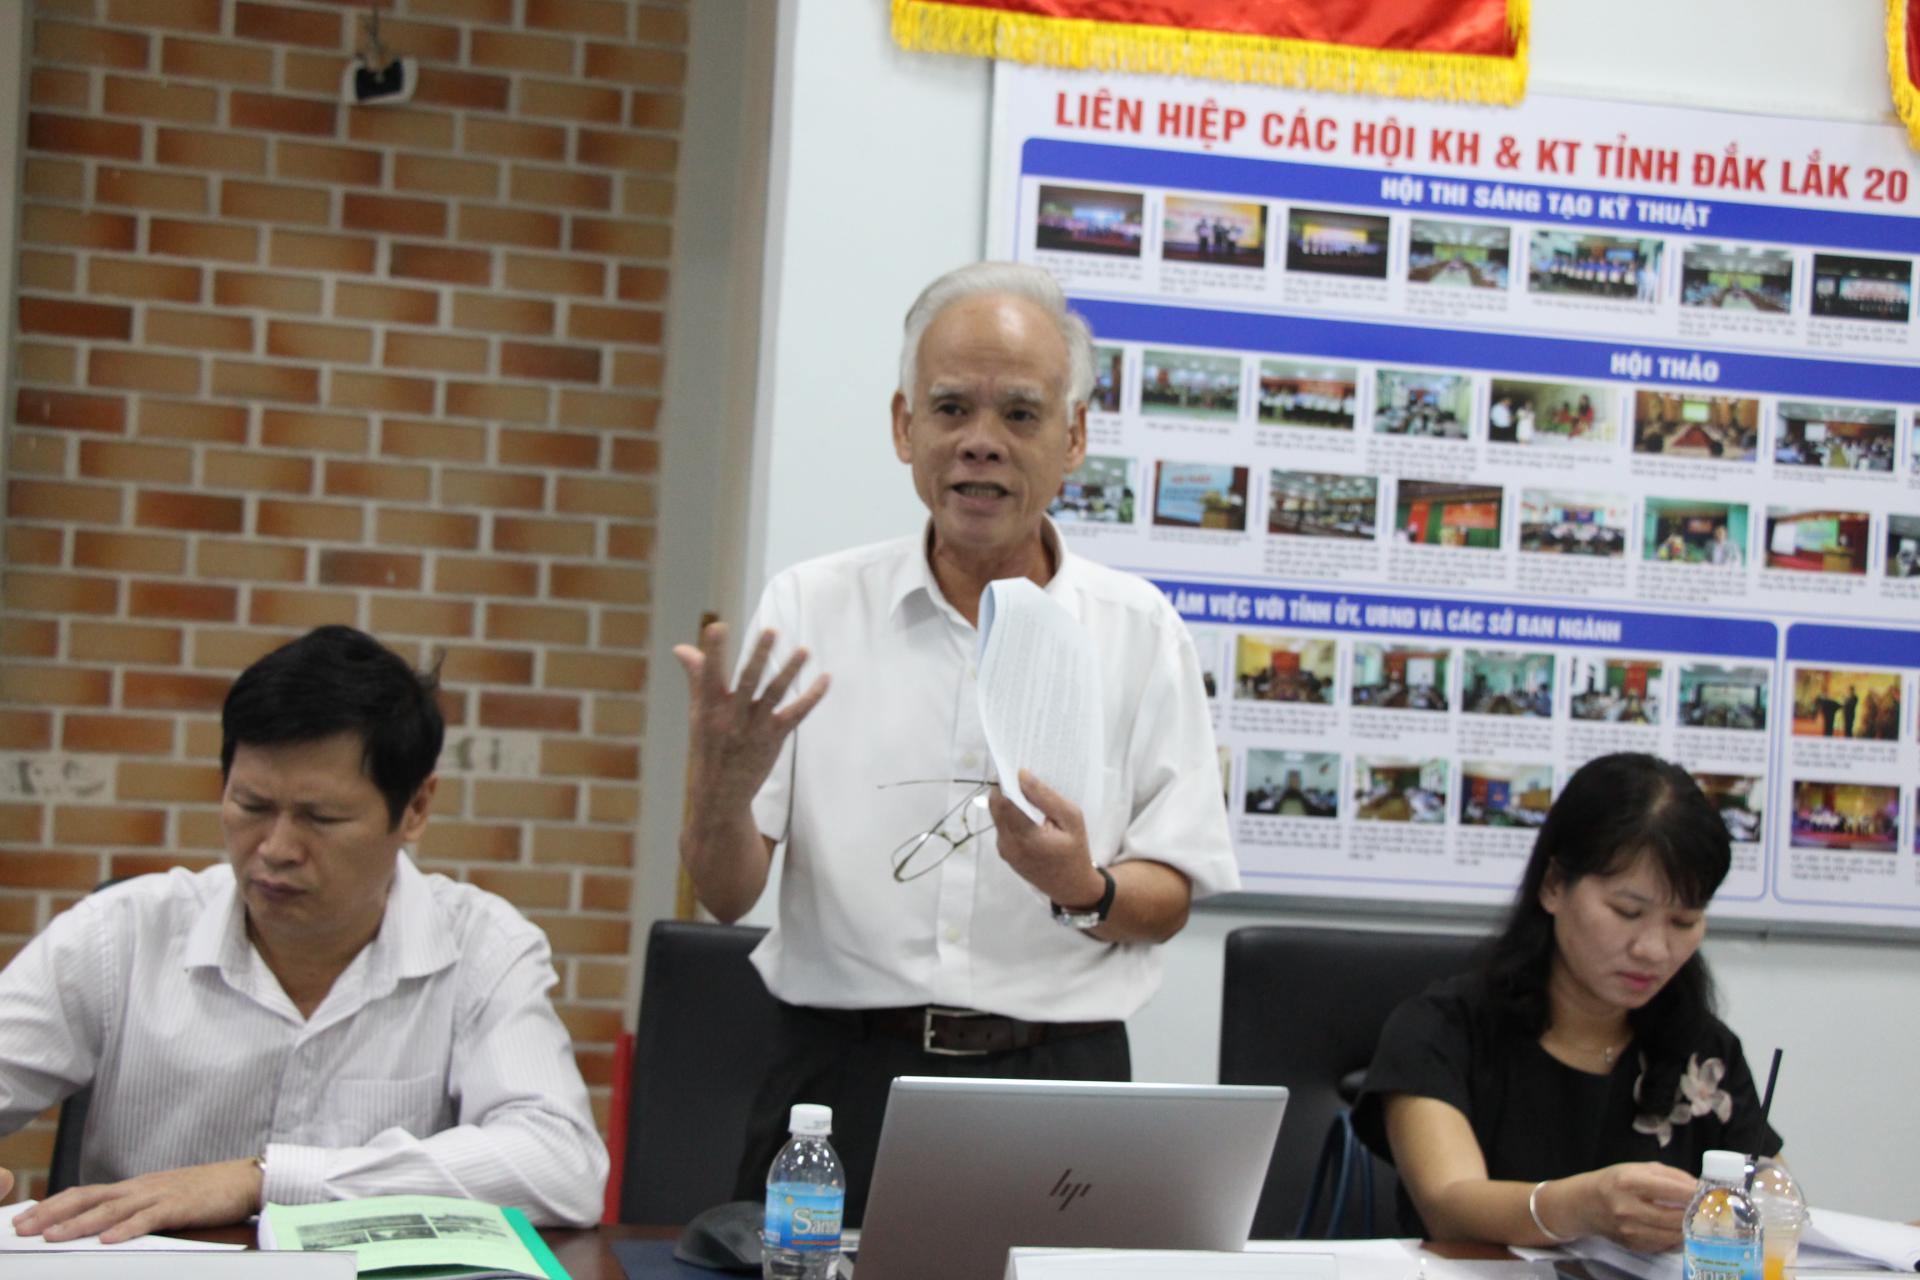 Dự án Quy hoạch tỉnh Đắk Lắk thời kỳ 2021 - 2030, tầm nhìn đến năm 2050: Lắng nghe tiếng nói các nhà khoa học